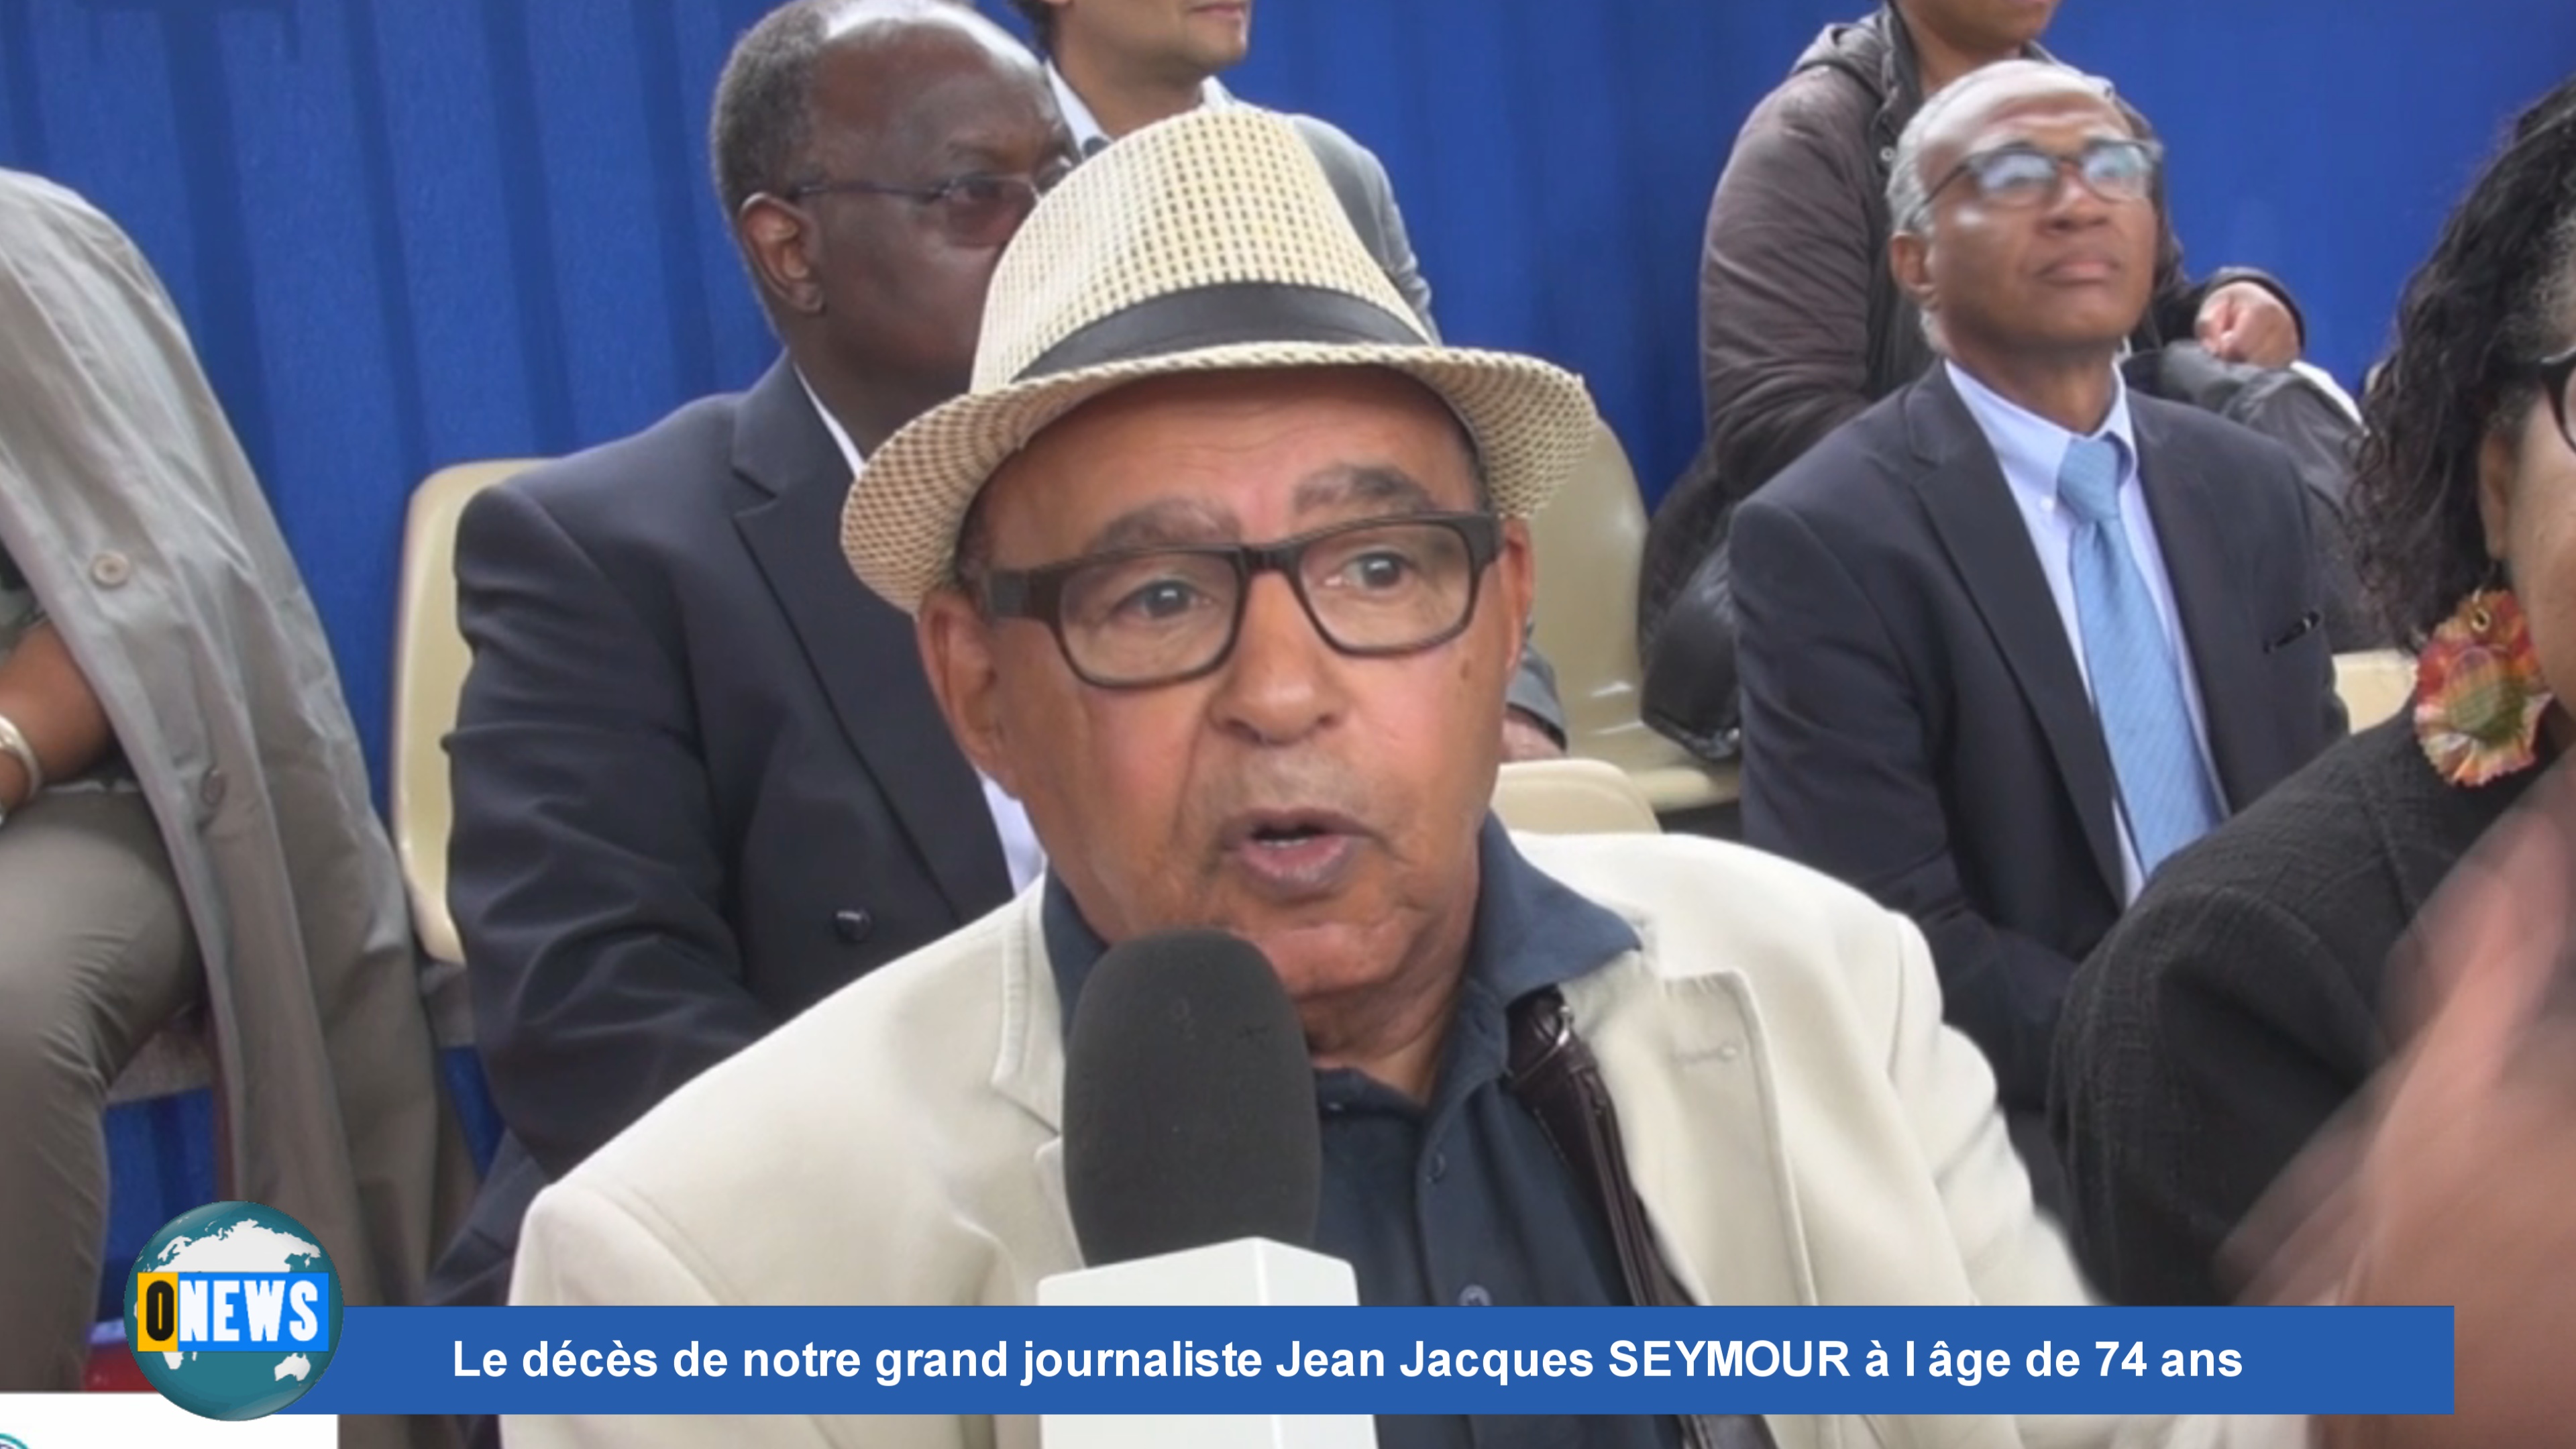 [Vidéo] Onews. Flash Spécial. Le décès de notre grand et talentueux journaliste Jean Jacques SEYMOUR